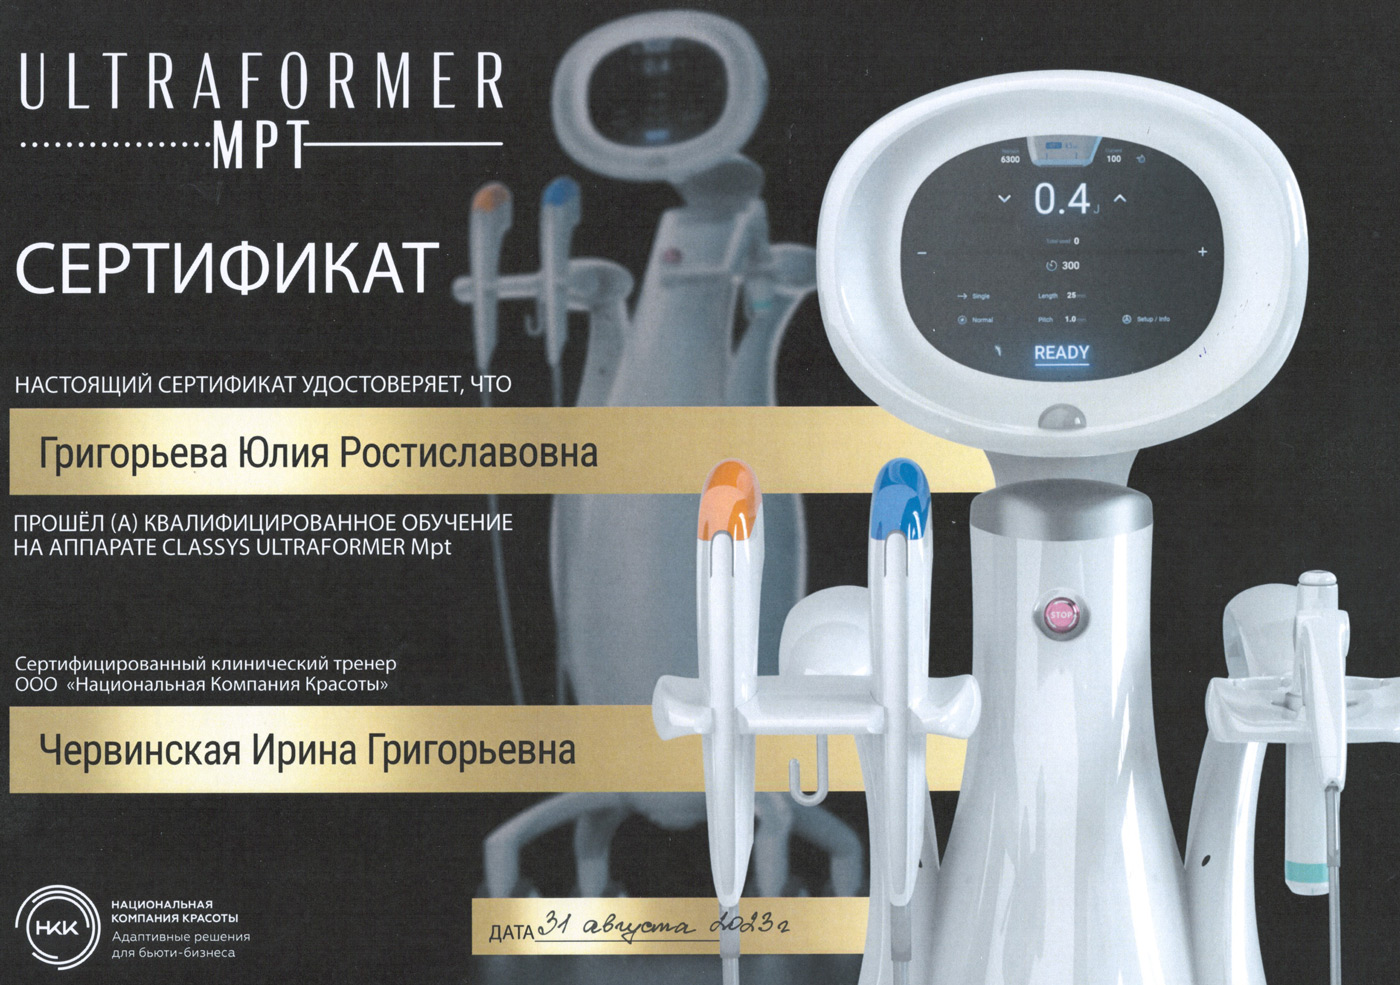 Сертификат — «Квалифицированное обучение на аппарате Classys Ultraformer MPT». Григорьева Юлия Ростиславовна